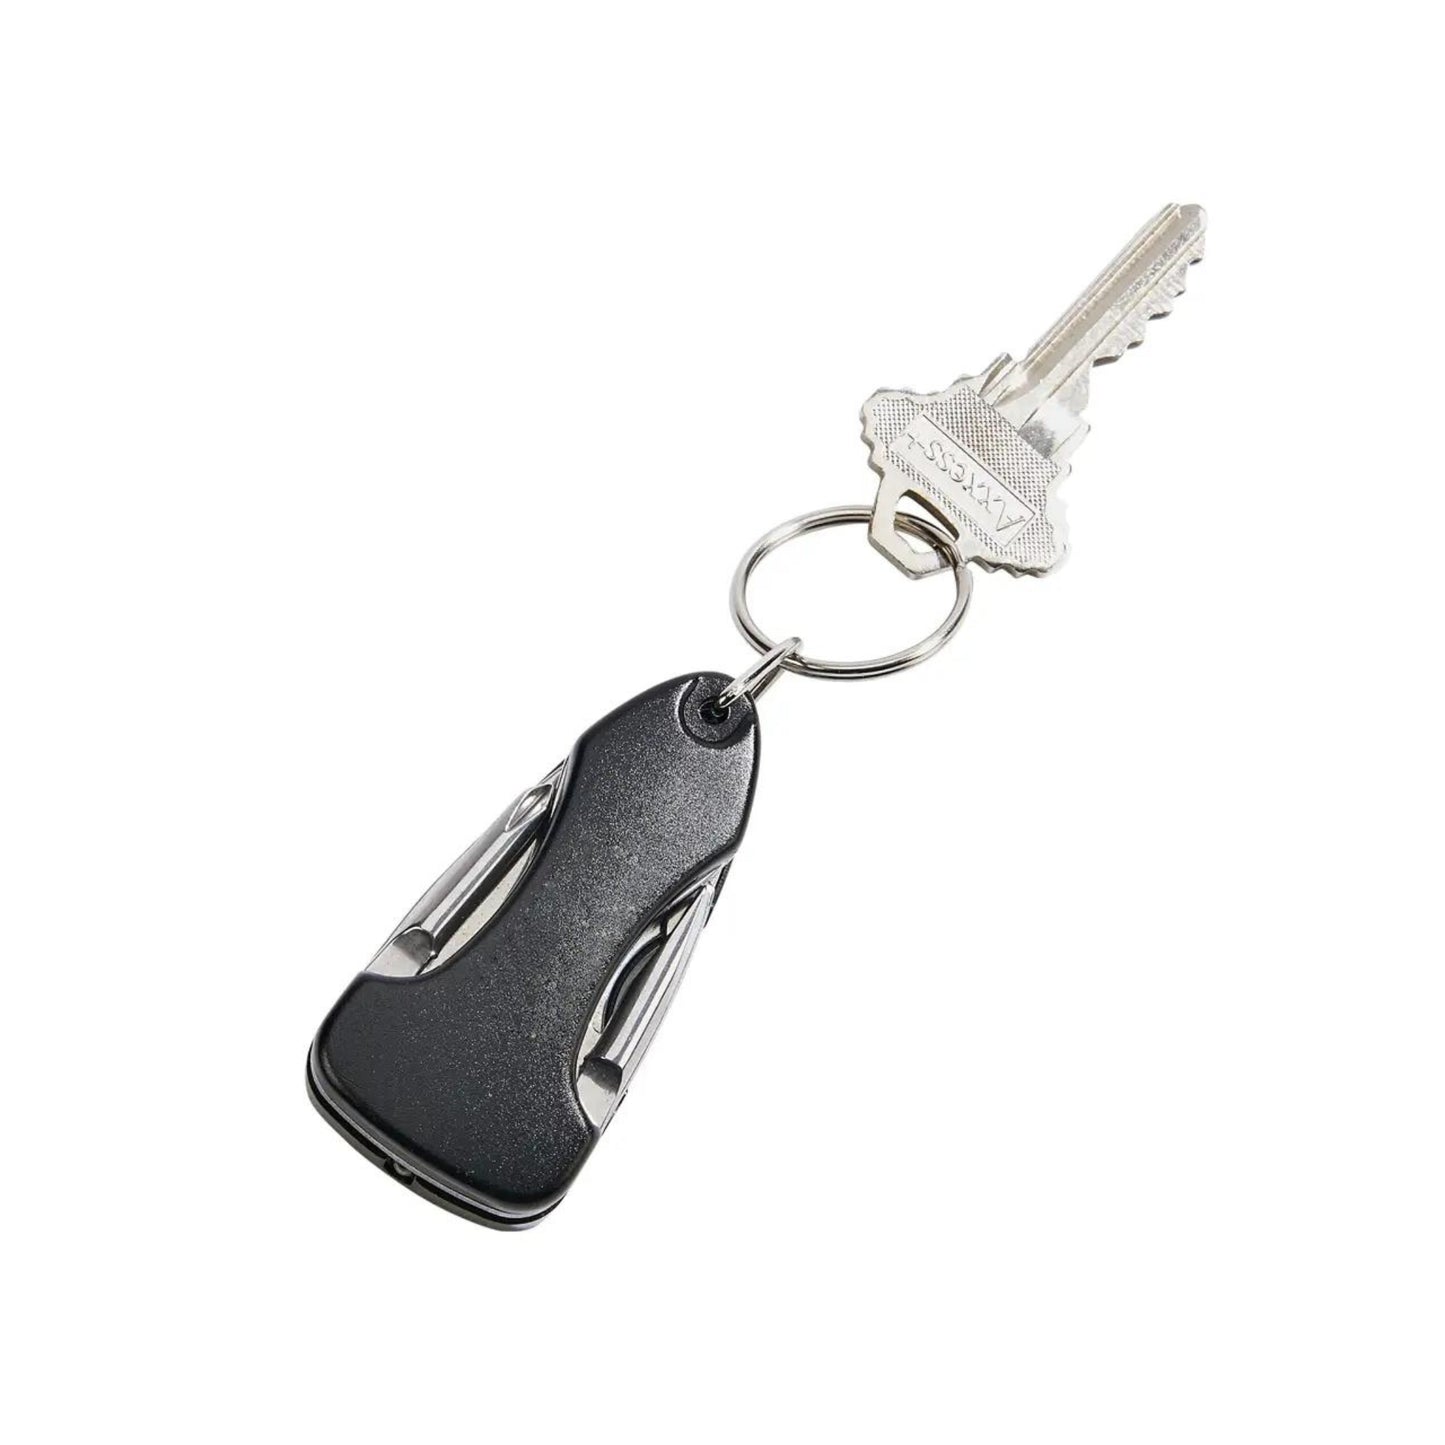 Black Key Chain W/Multi Tools,3.5" L